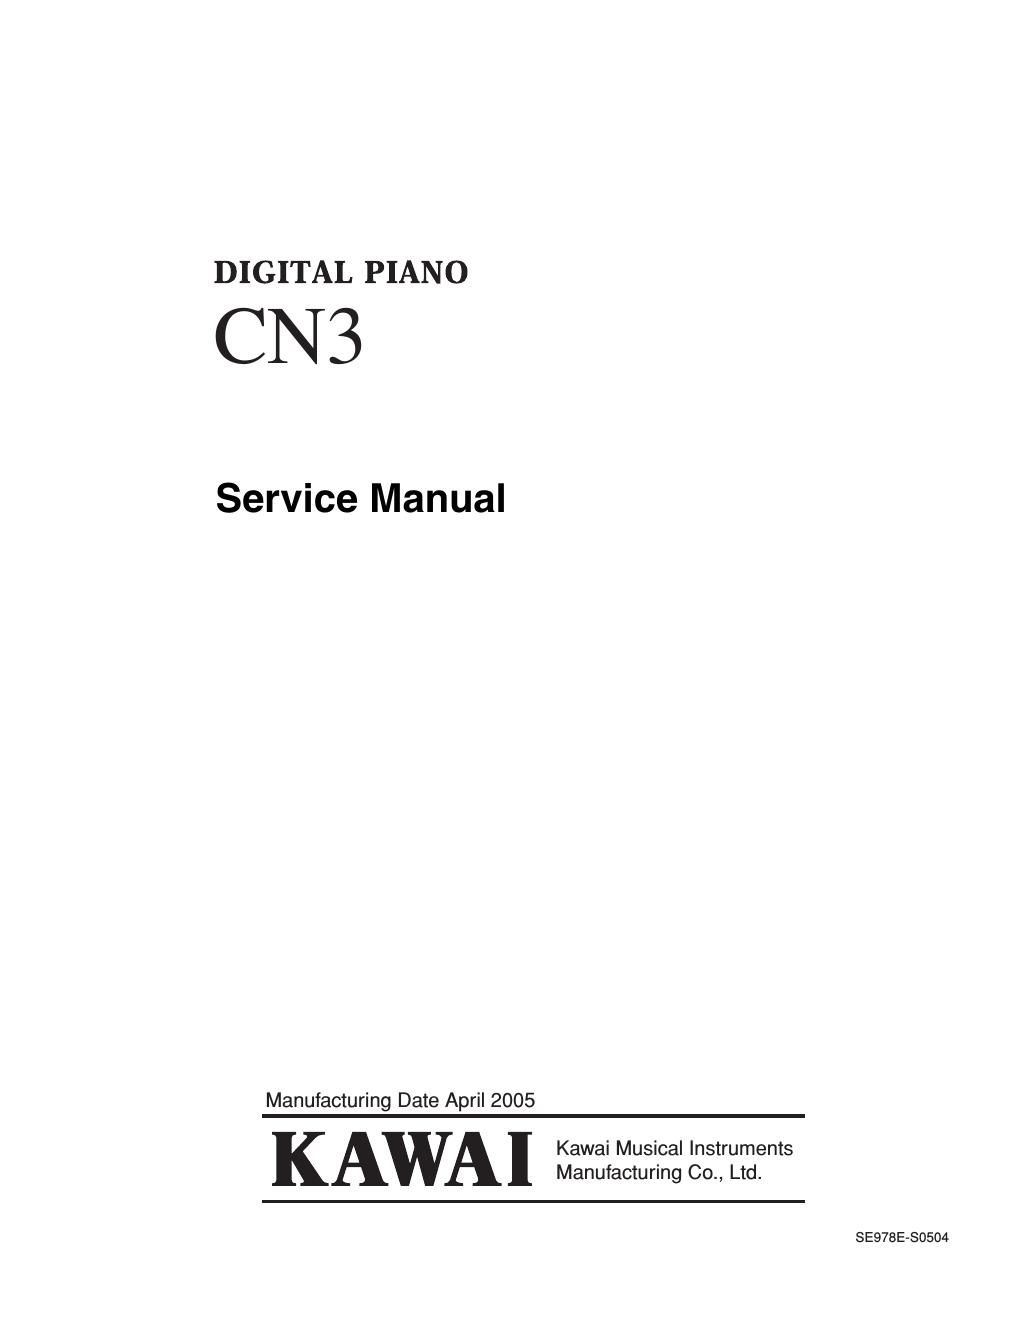 kawai cn3 service manual